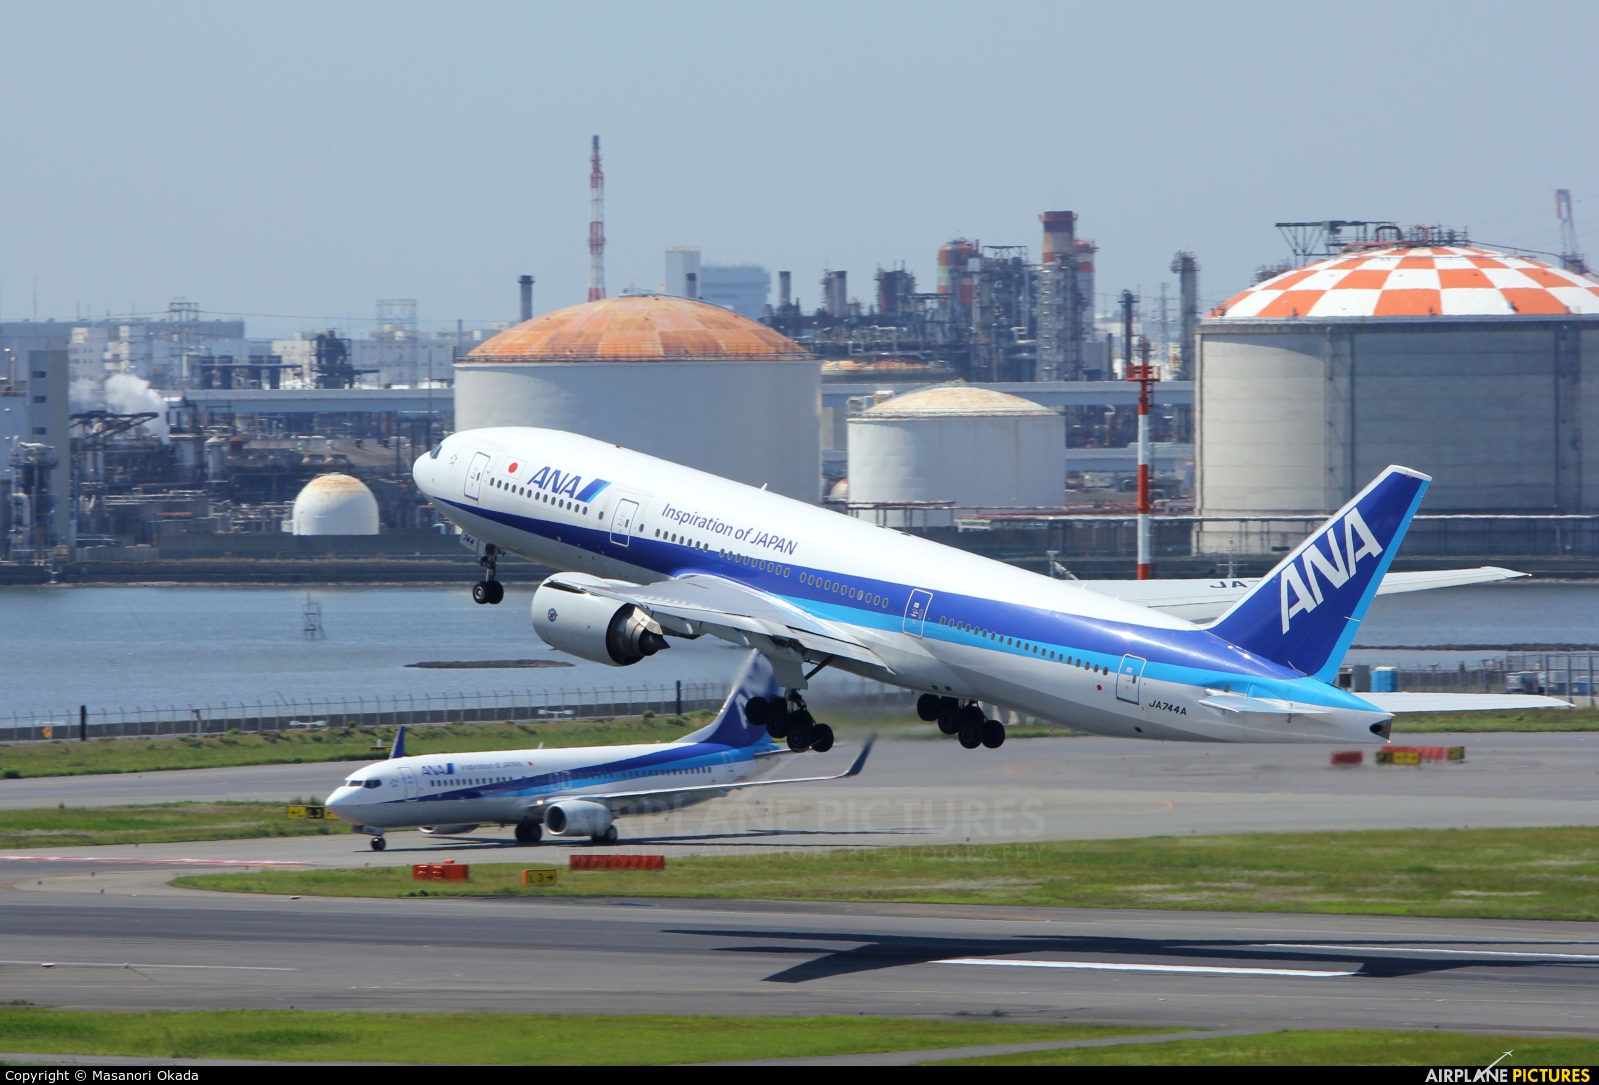 ANA - All Nippon Airways JA744A aircraft at Tokyo - Haneda Intl